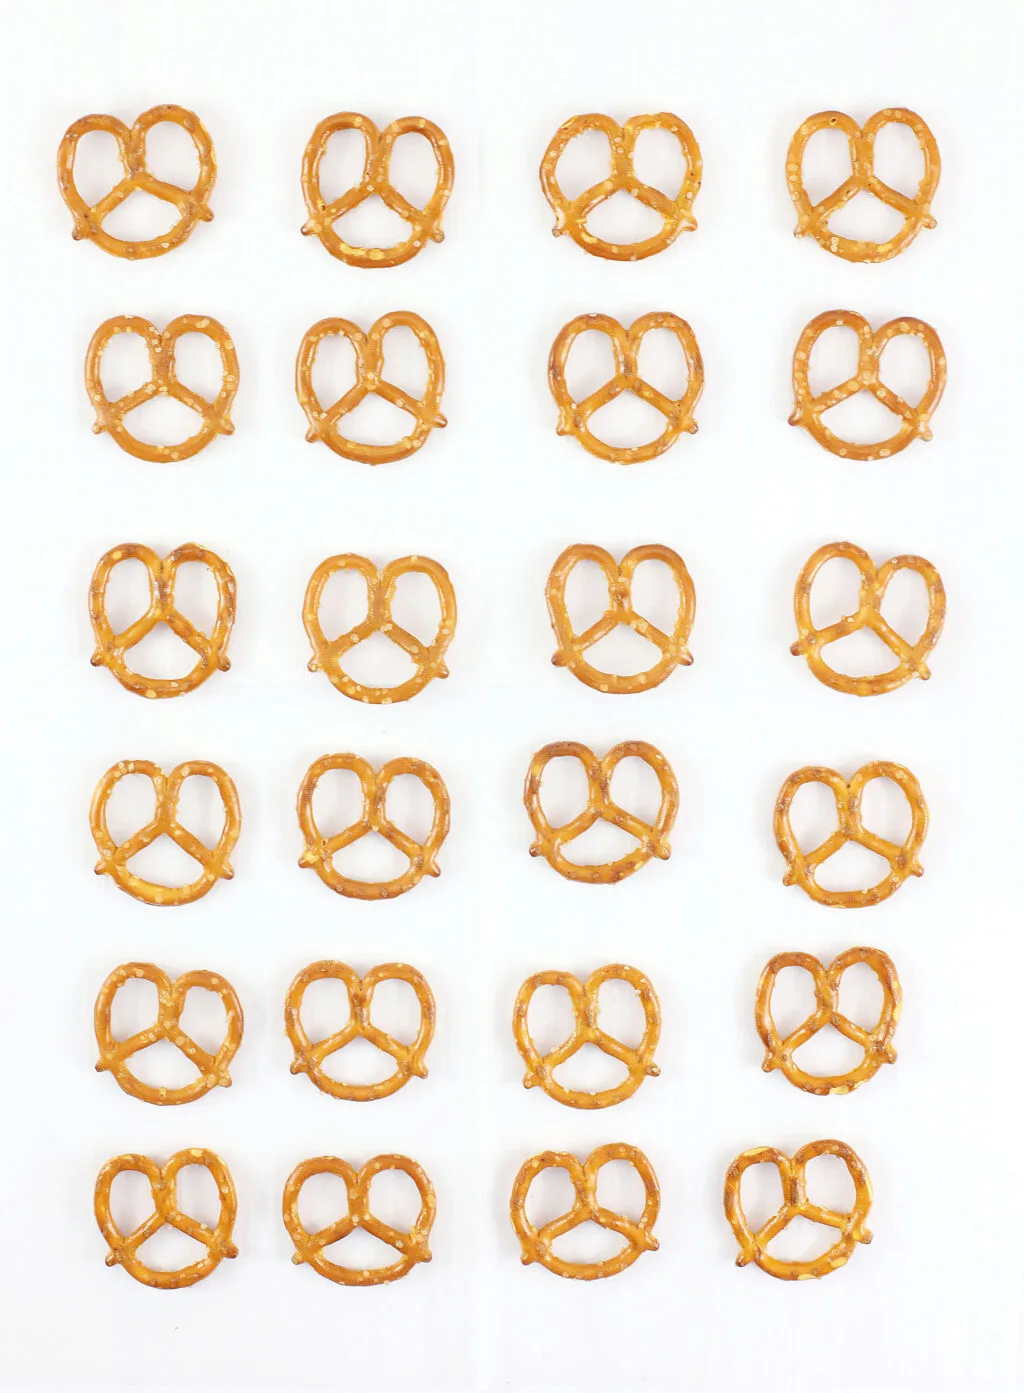 pretzel twists on parchment paper